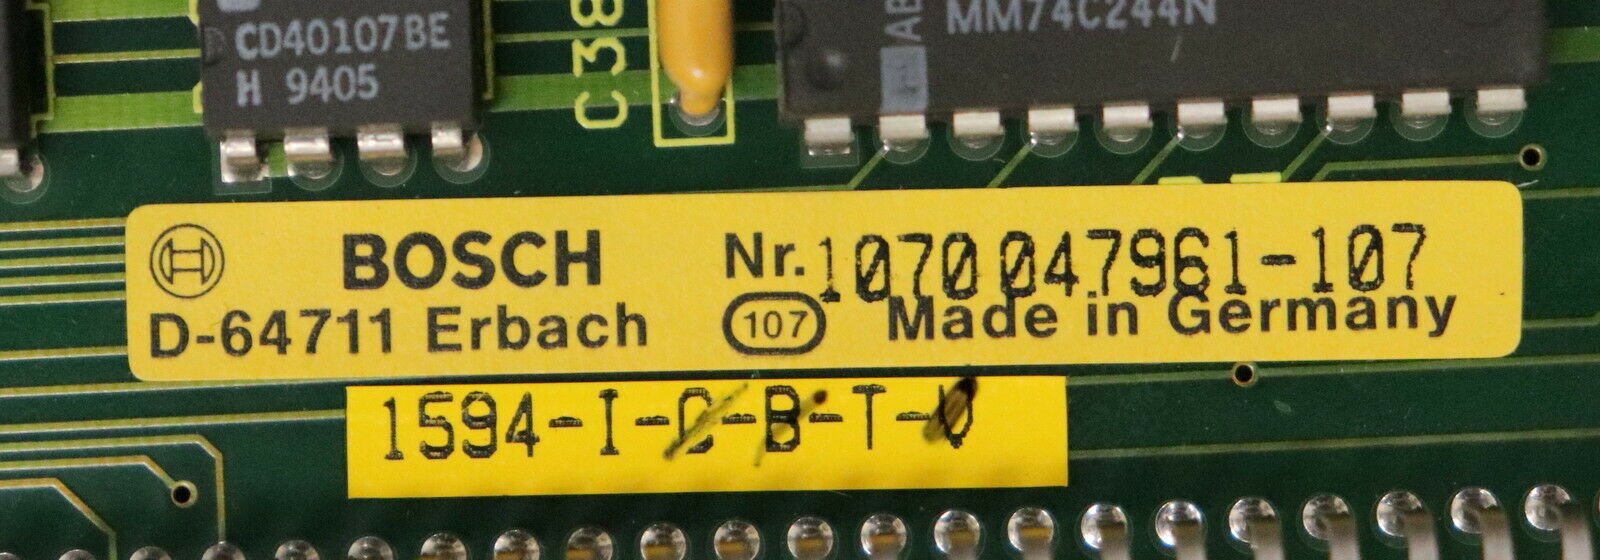 BOSCH Digital-Input Board E24V- Mat.Nr. 1070047961-107 24V